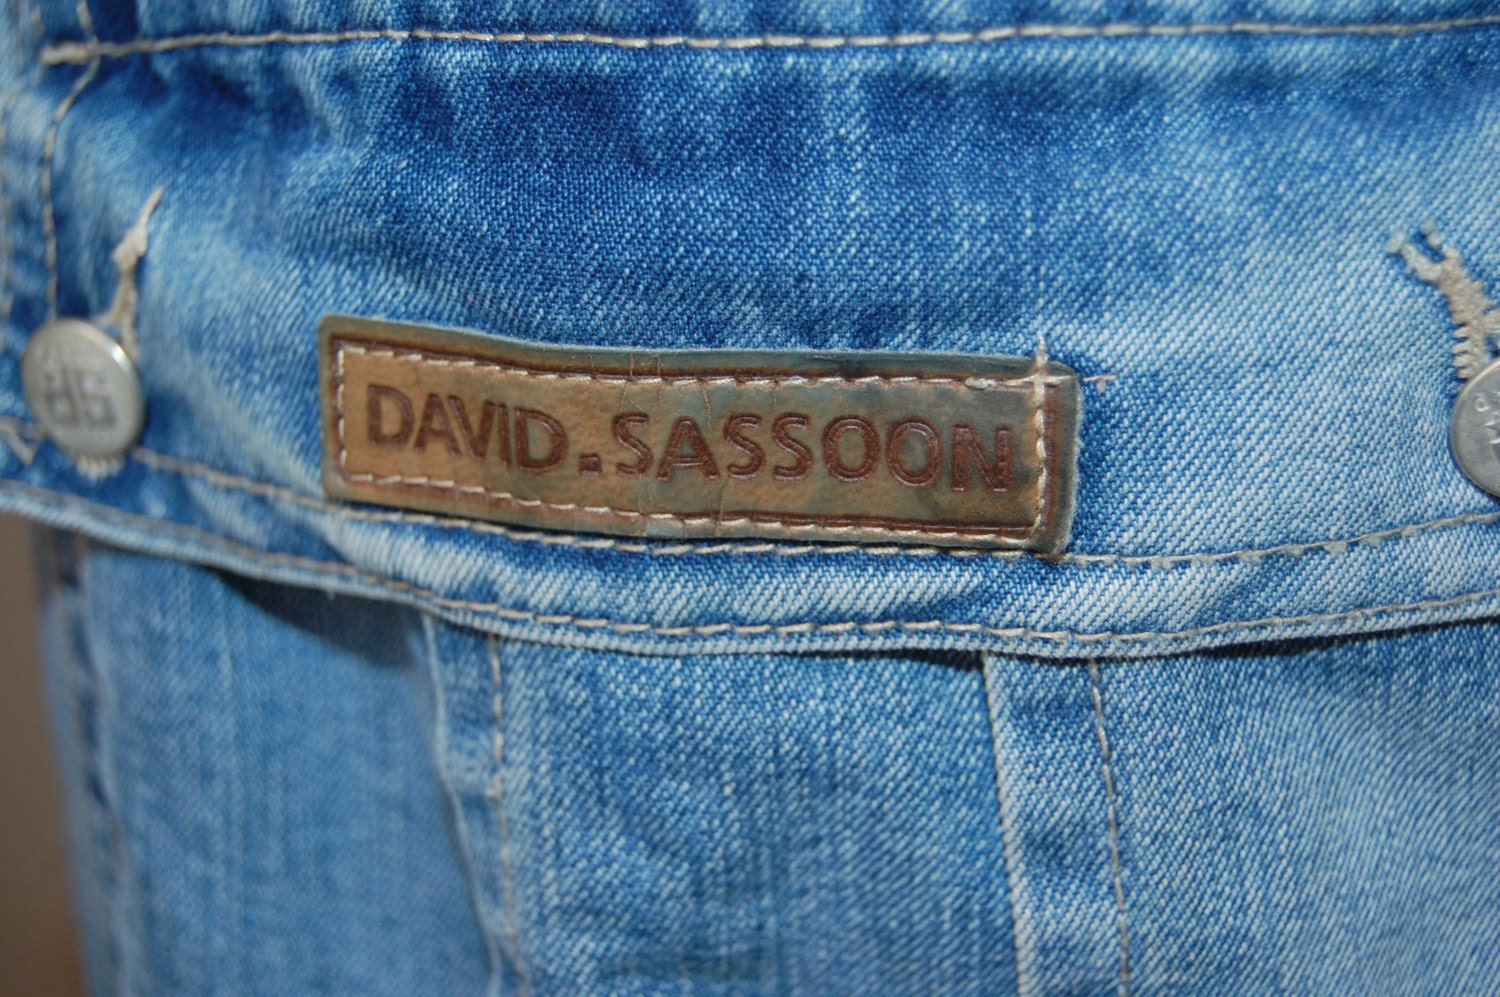 Designer size 26 jeans / Vintage Sassoon jeans / denim cargo